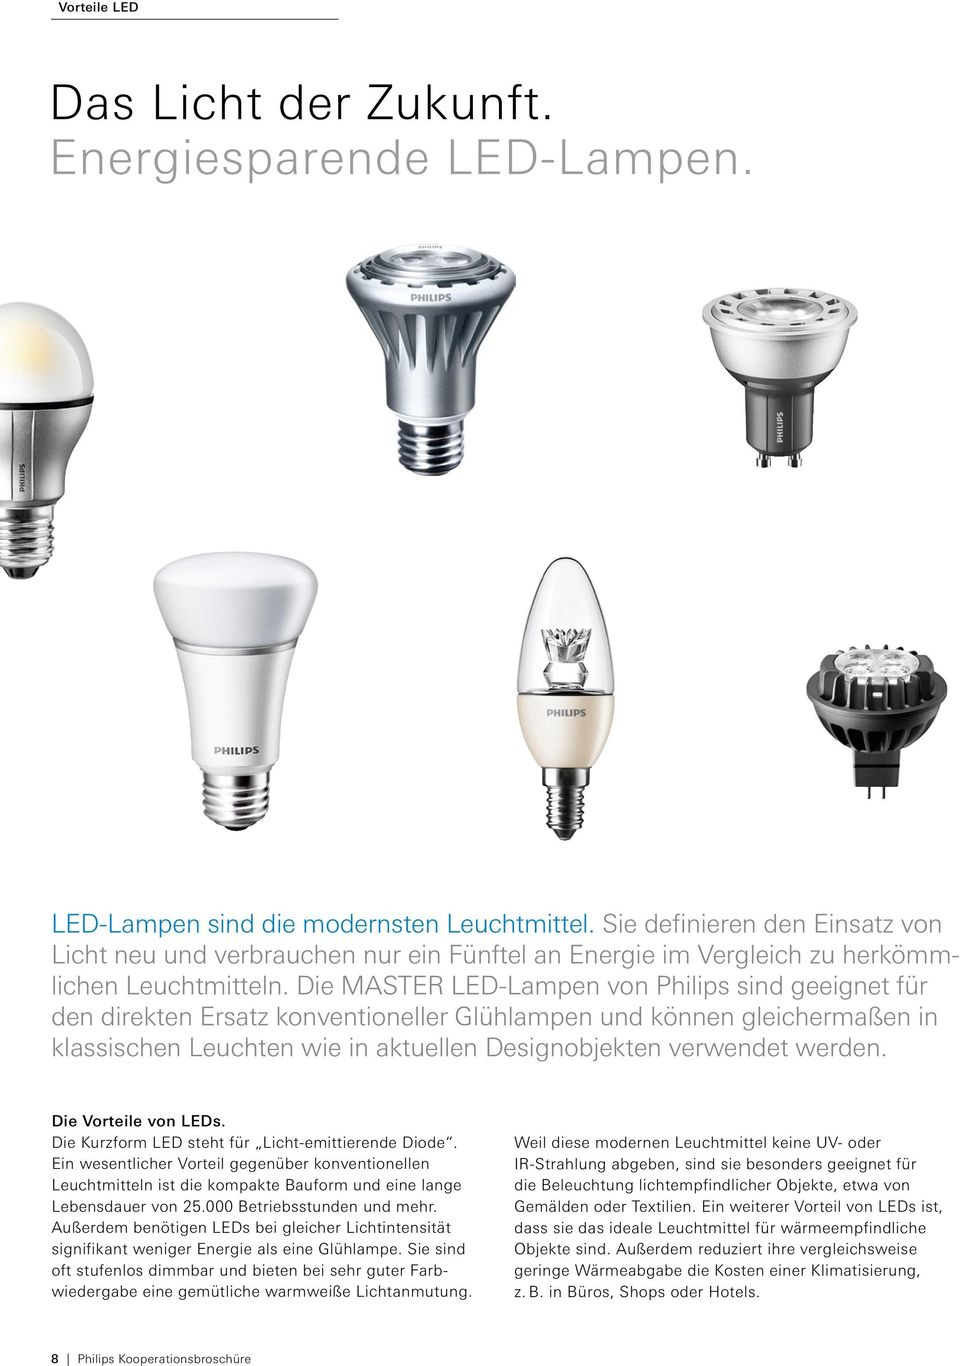 Die Master LED-Lampen von Philips sind geeignet für den direkten Ersatz konventioneller Glühlampen und können gleichermaßen in klassischen Leuchten wie in aktuellen Designobjekten verwendet werden.